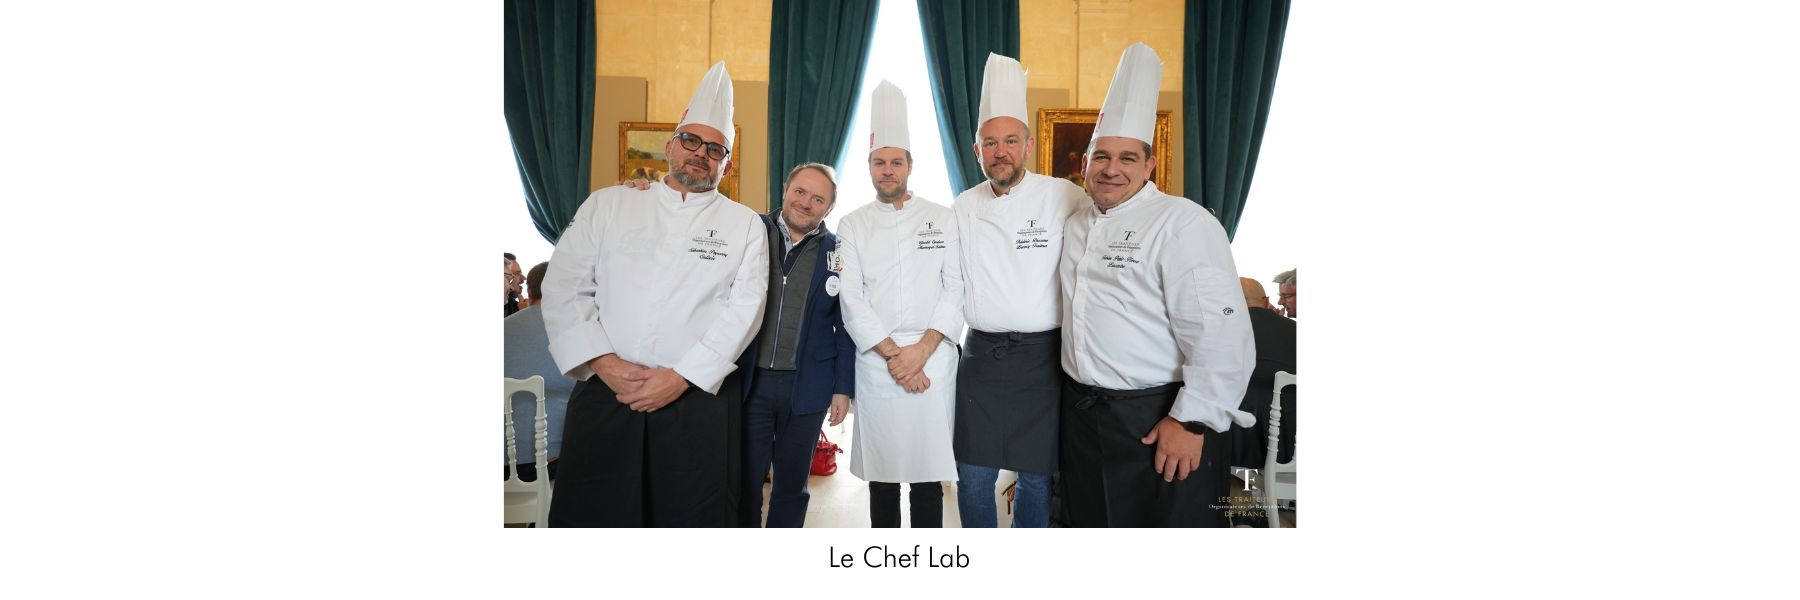 Traiteurs de France Le Chef Lab